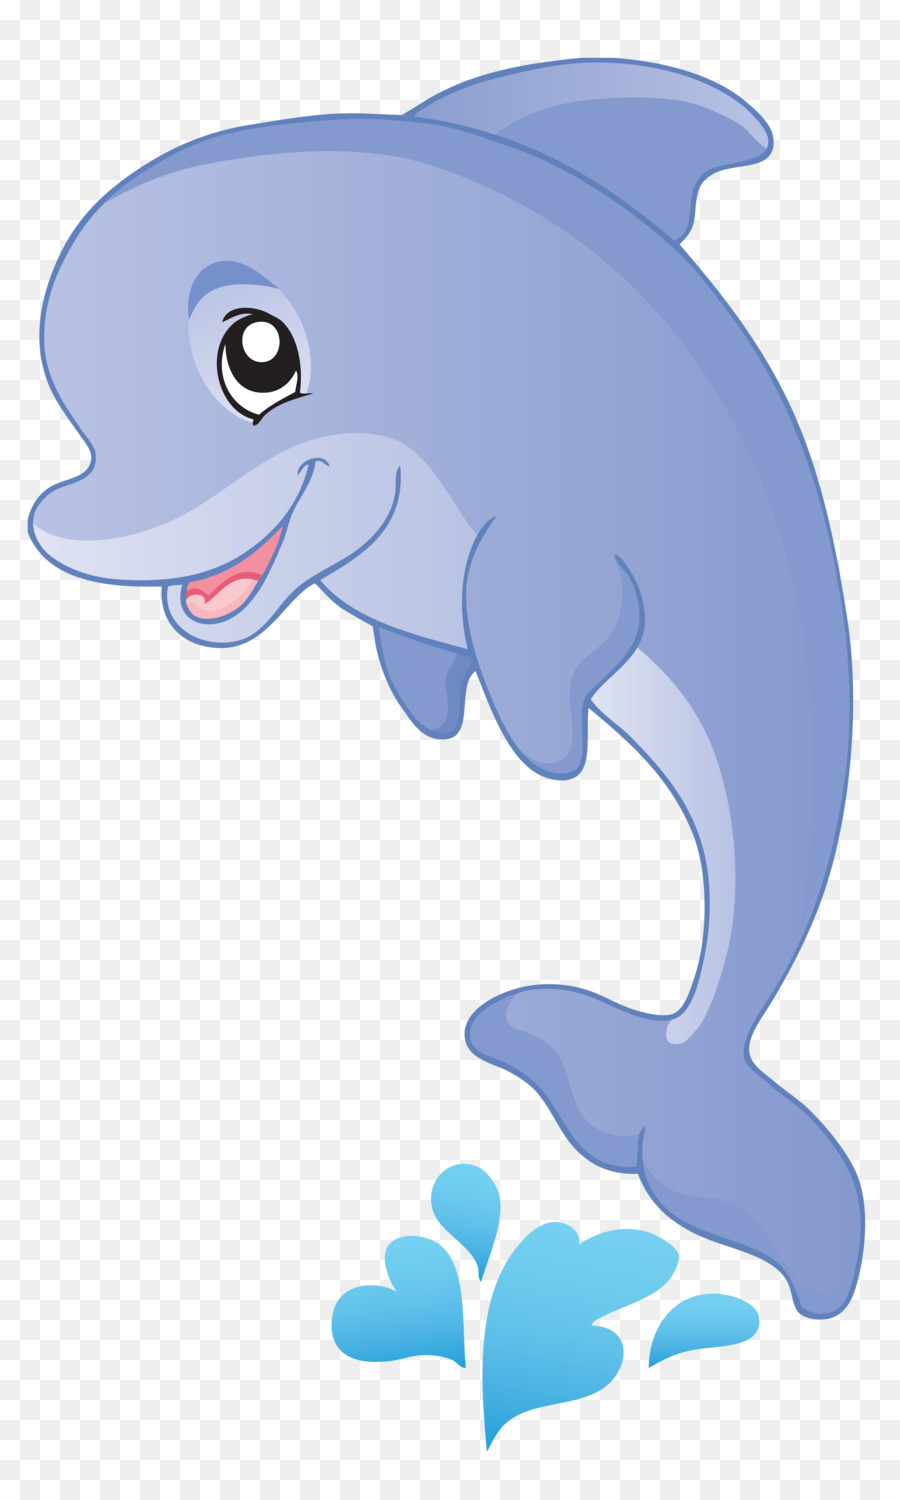 Fish Cartoon Aquatic animal Clip art - dolphin png download - 3300*5500 - Free Transparent Fish png Download.